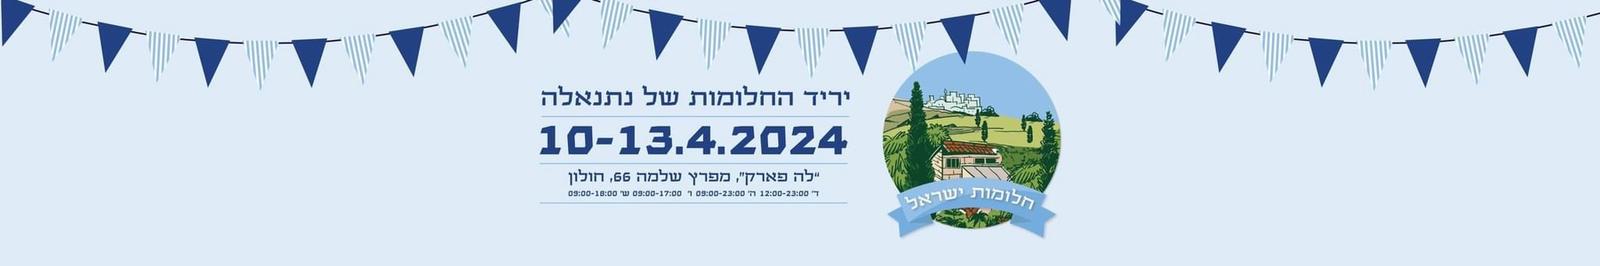 יריד החלומות של נתנאלה 10-13.4.2023 . ייריד לייף סטייל של מיטב עסקי הבוטיק הישראלים בדיוק כשאנחנו רוצים וצריכים לחזק אחד את השני! מתרגשים לפגוש אתכם